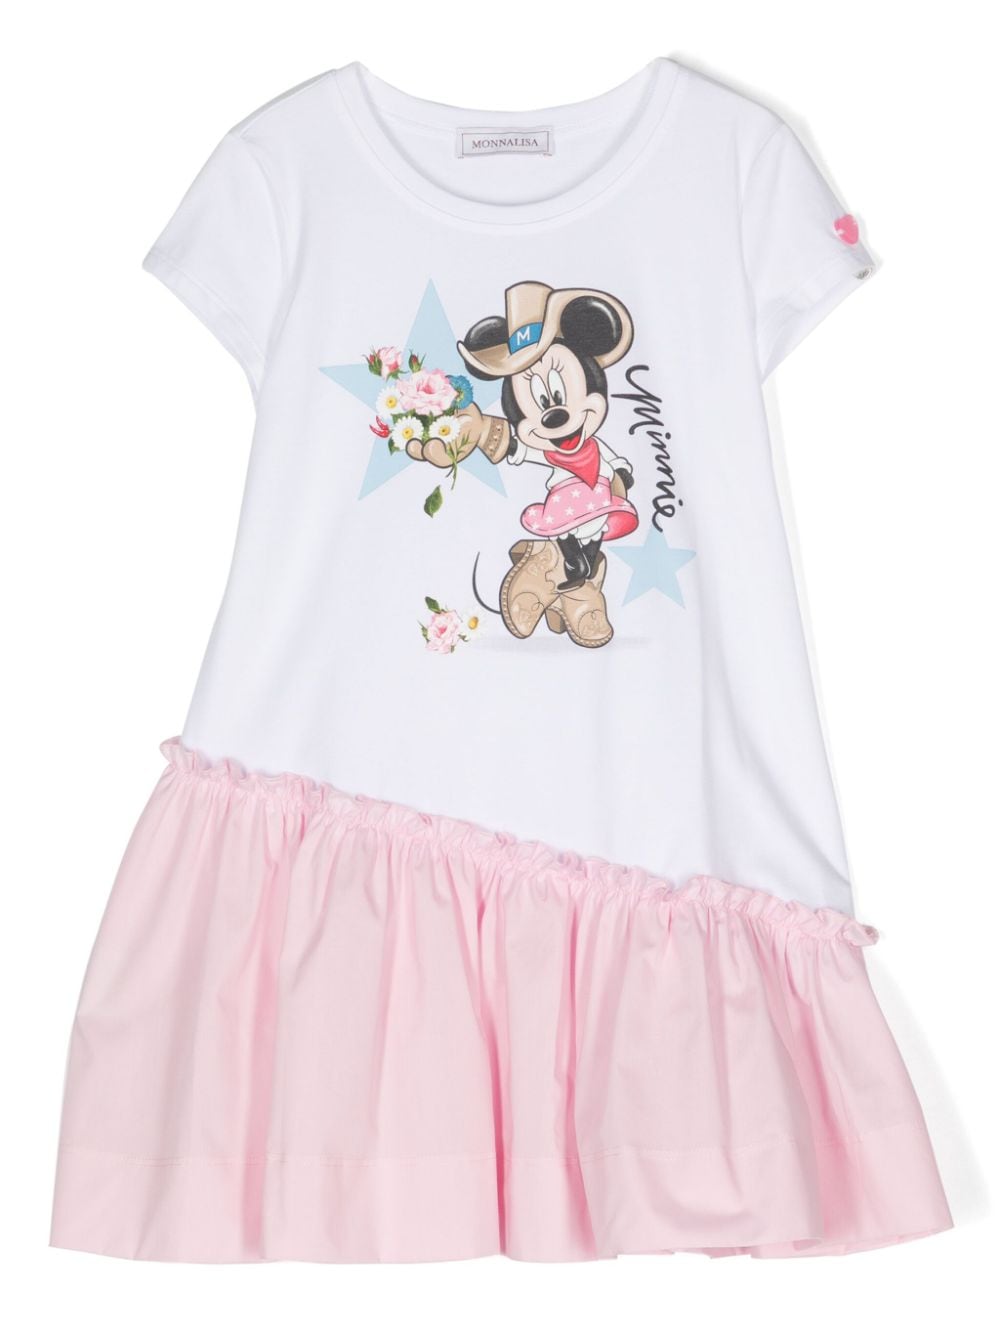 White/pink Minnie print dress